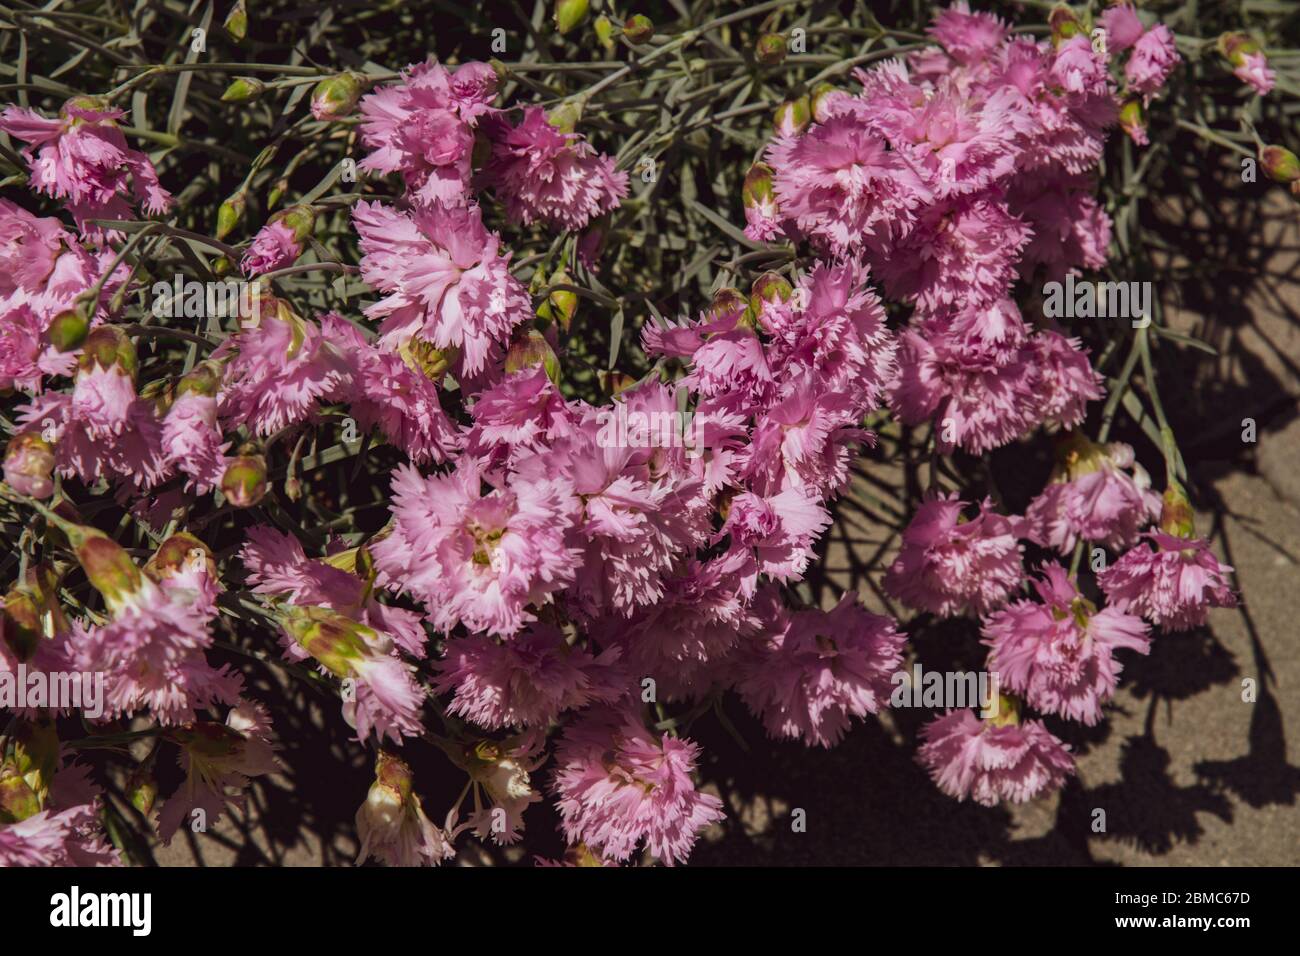 Florale Textur von rosa Nelkenbusch mit üppigen Blütenblättern von vielen Blumen und kleinen Knospen zwischen grünen Blättern. Draufsicht der blühenden Nelkenblüten auf f Stockfoto